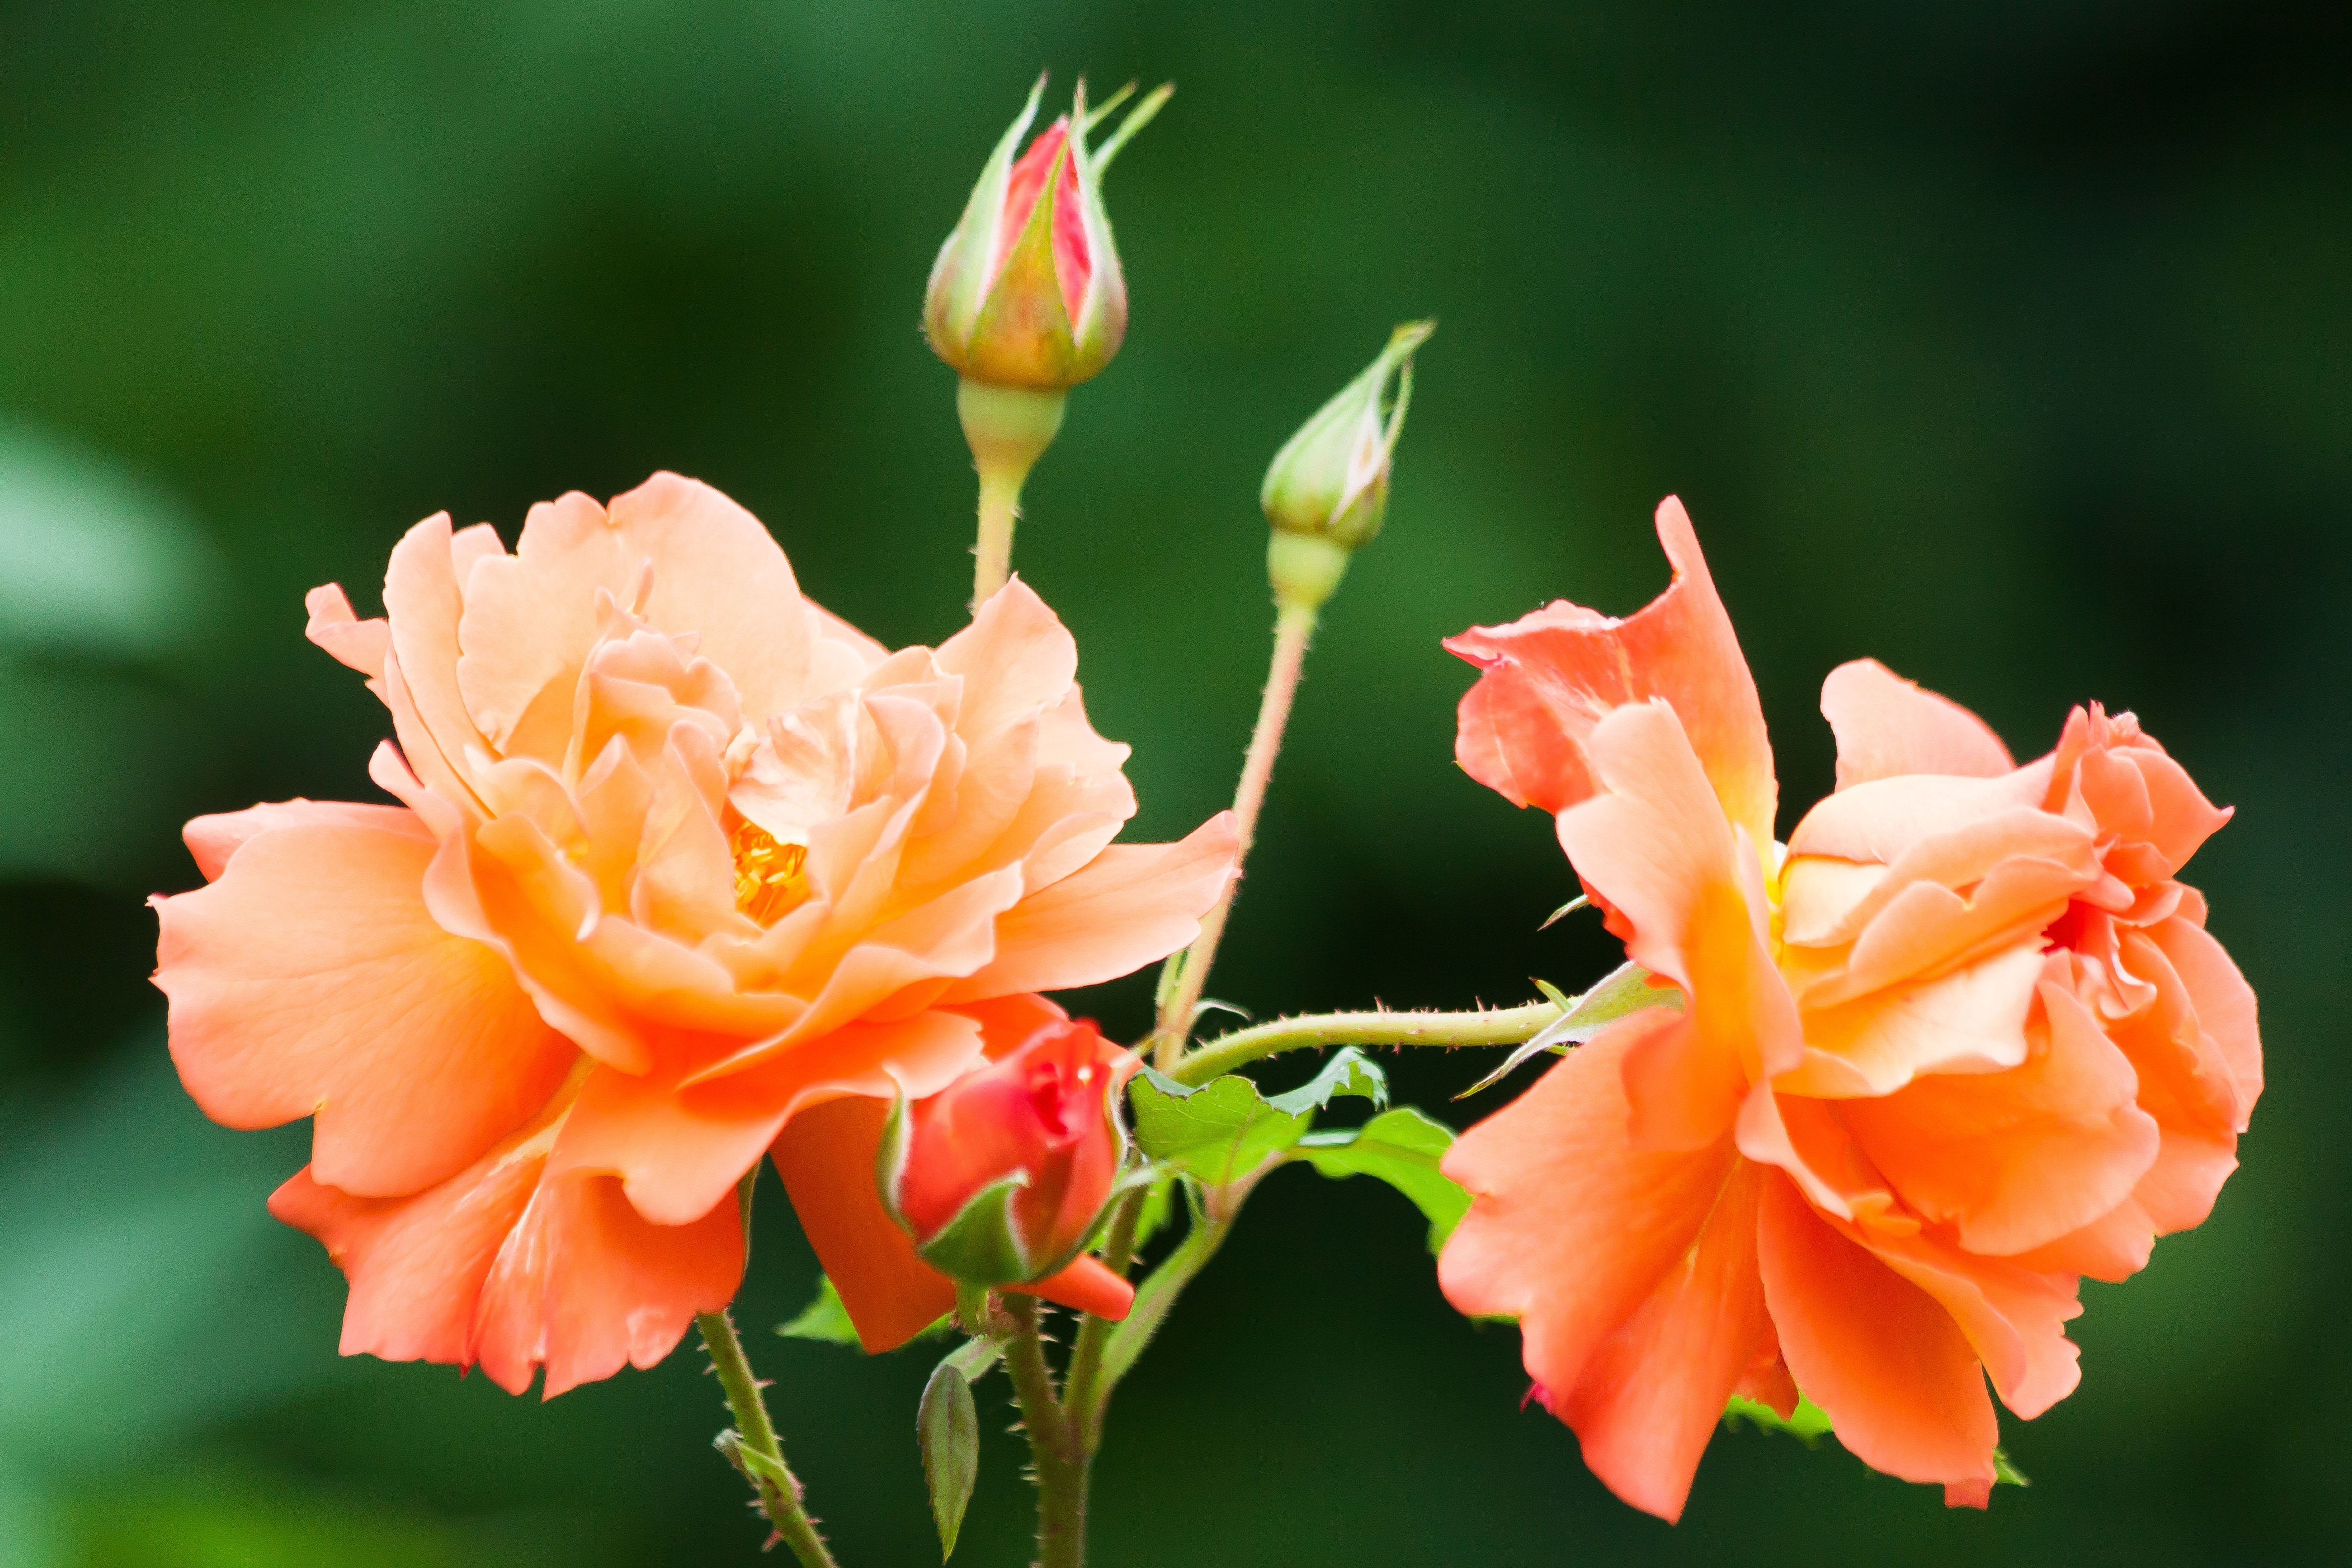 full bloomed orange rose flower